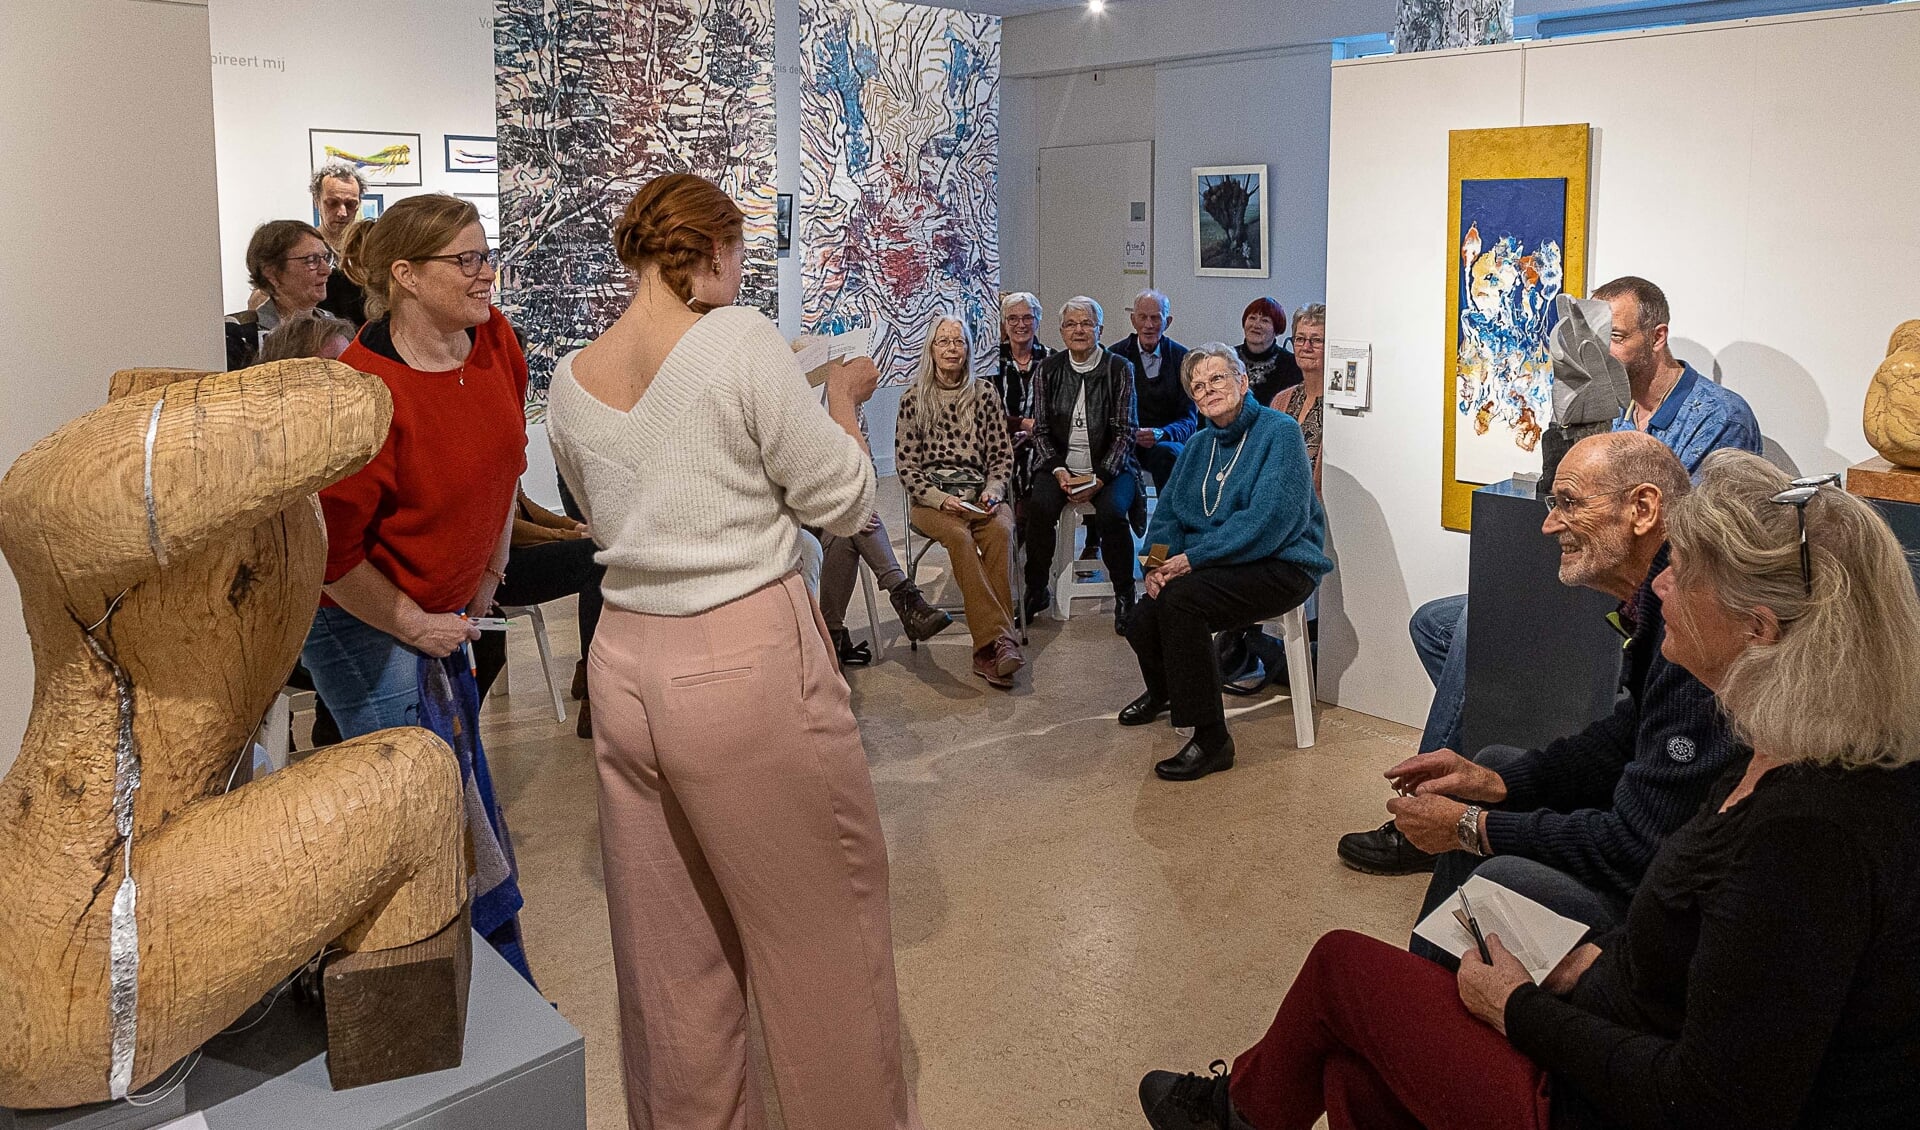 40 deelnemende Maassluise Kunstenaars, kunstenaars van KunstWerkt en andere bezoekers in Museum Maassluis gingen met elkaar in gesprek over de expositie ONTMOETINGEN - BIS. 